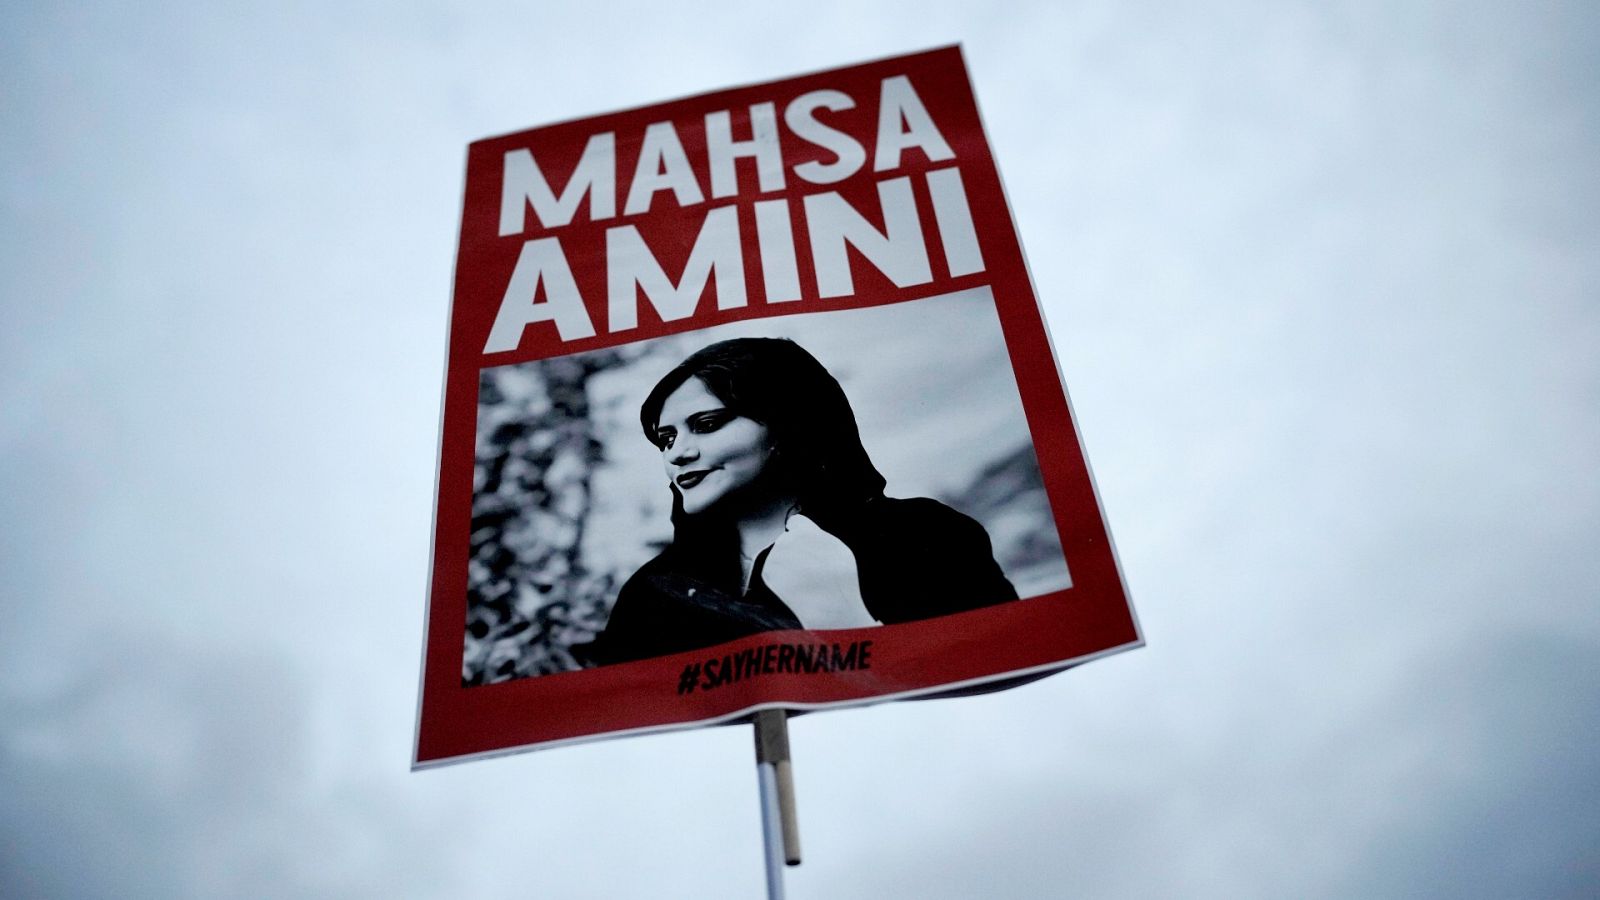 Una mujer sostiene una pancarta con una imagen de la iraní Mahsa Amini mientras asiste a una protesta contra su muerte en Berlín, Alemania